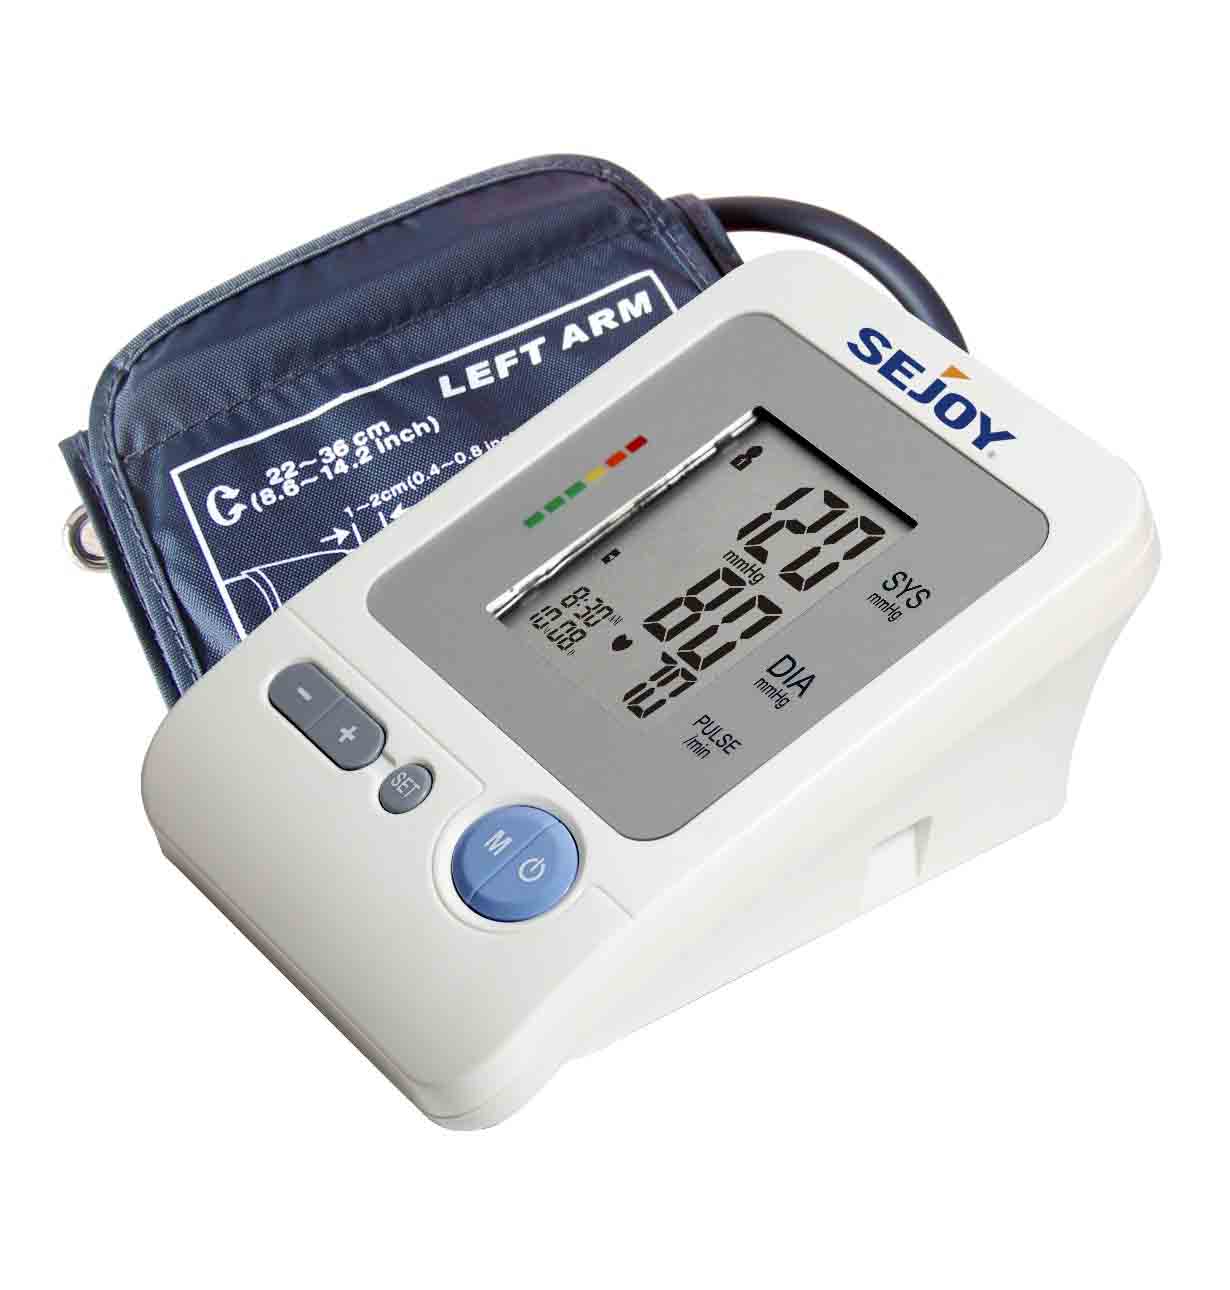 臂式电子血压计 BP-1304